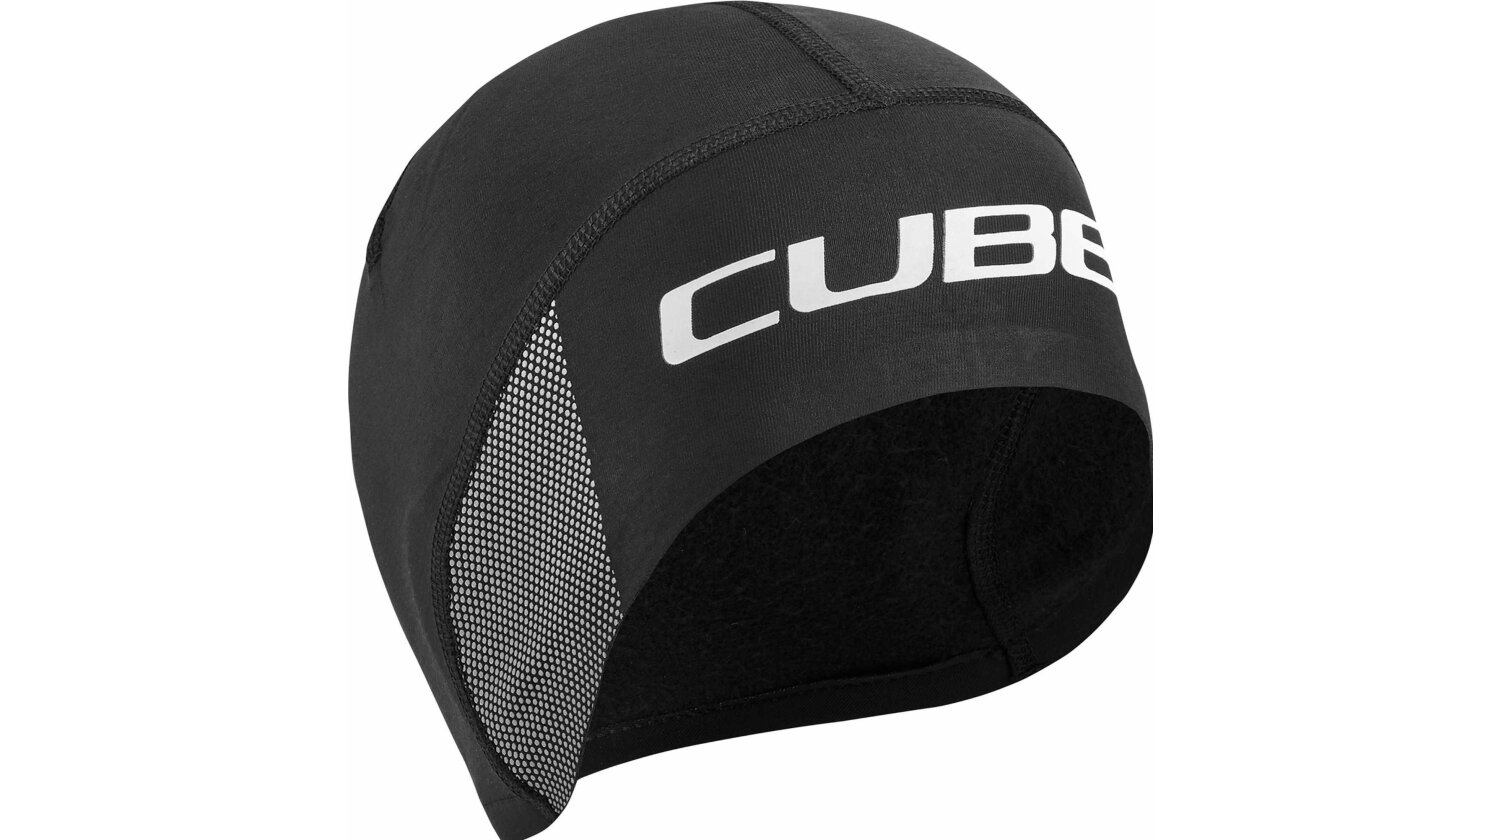 Cube Helmmütze black